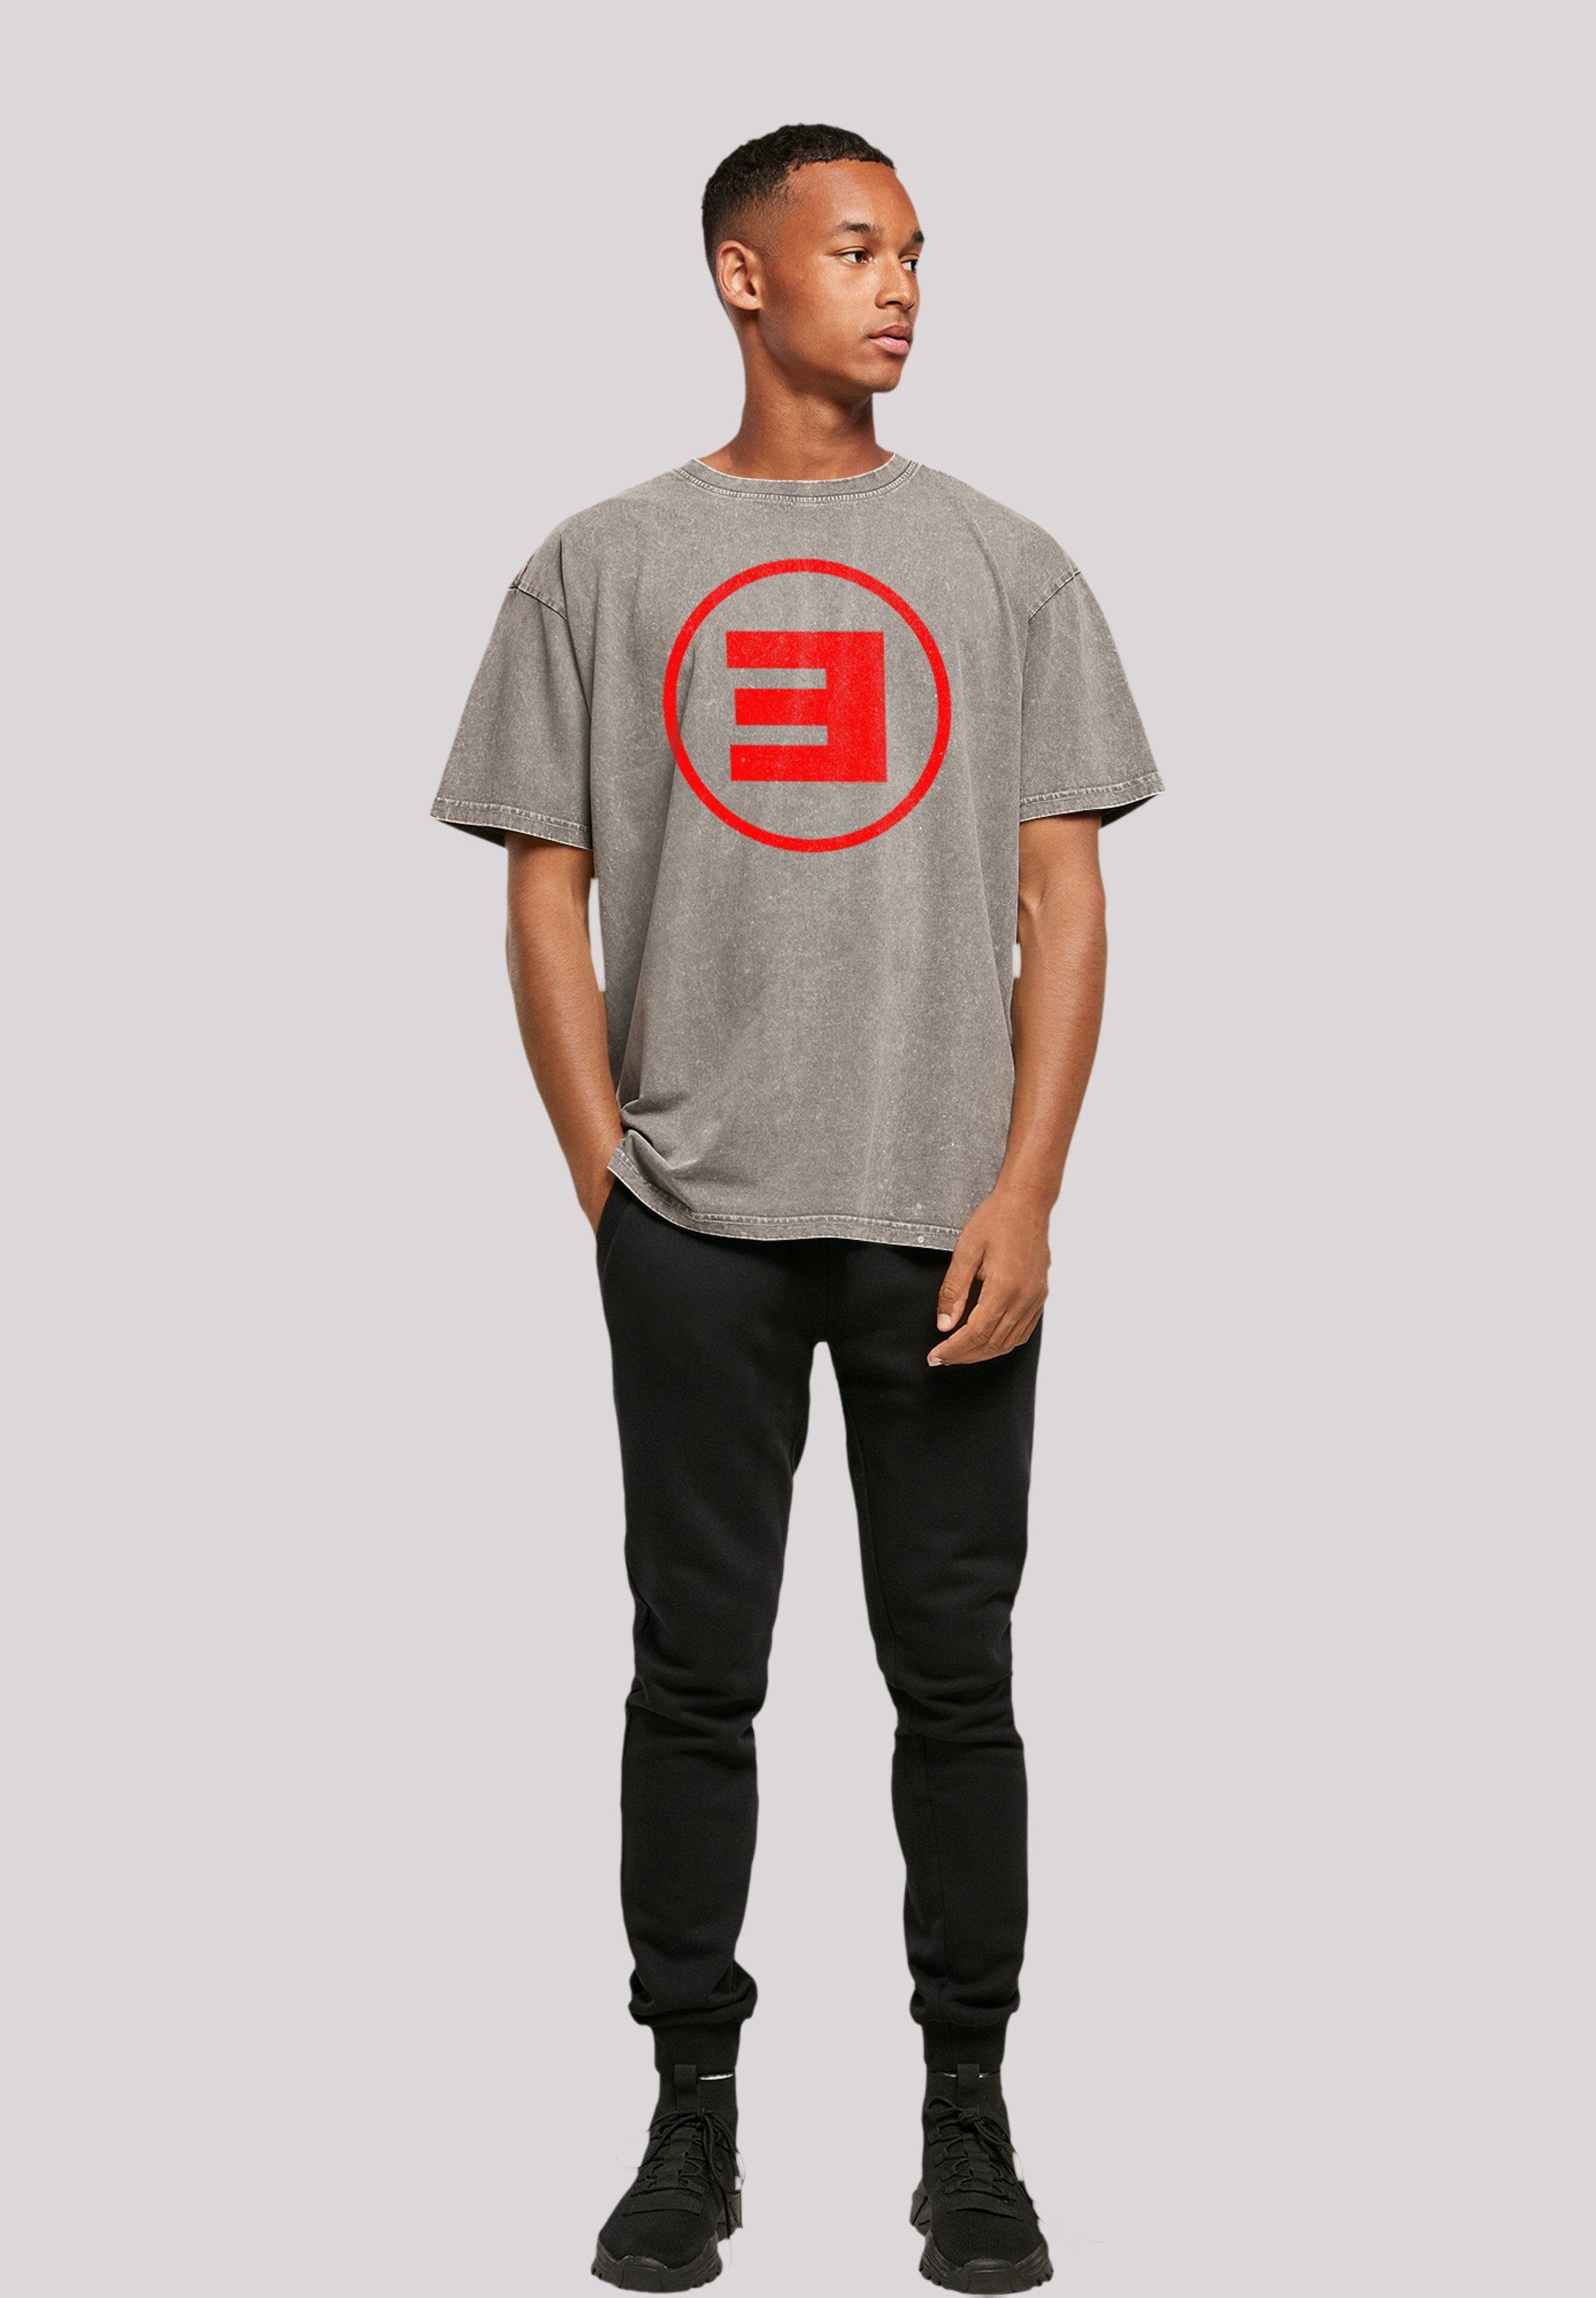 F4NT4STIC T-Shirt Eminem Circle Hip Off Musik, Rock Hop Qualität, Music Premium By E Rap Asphalt